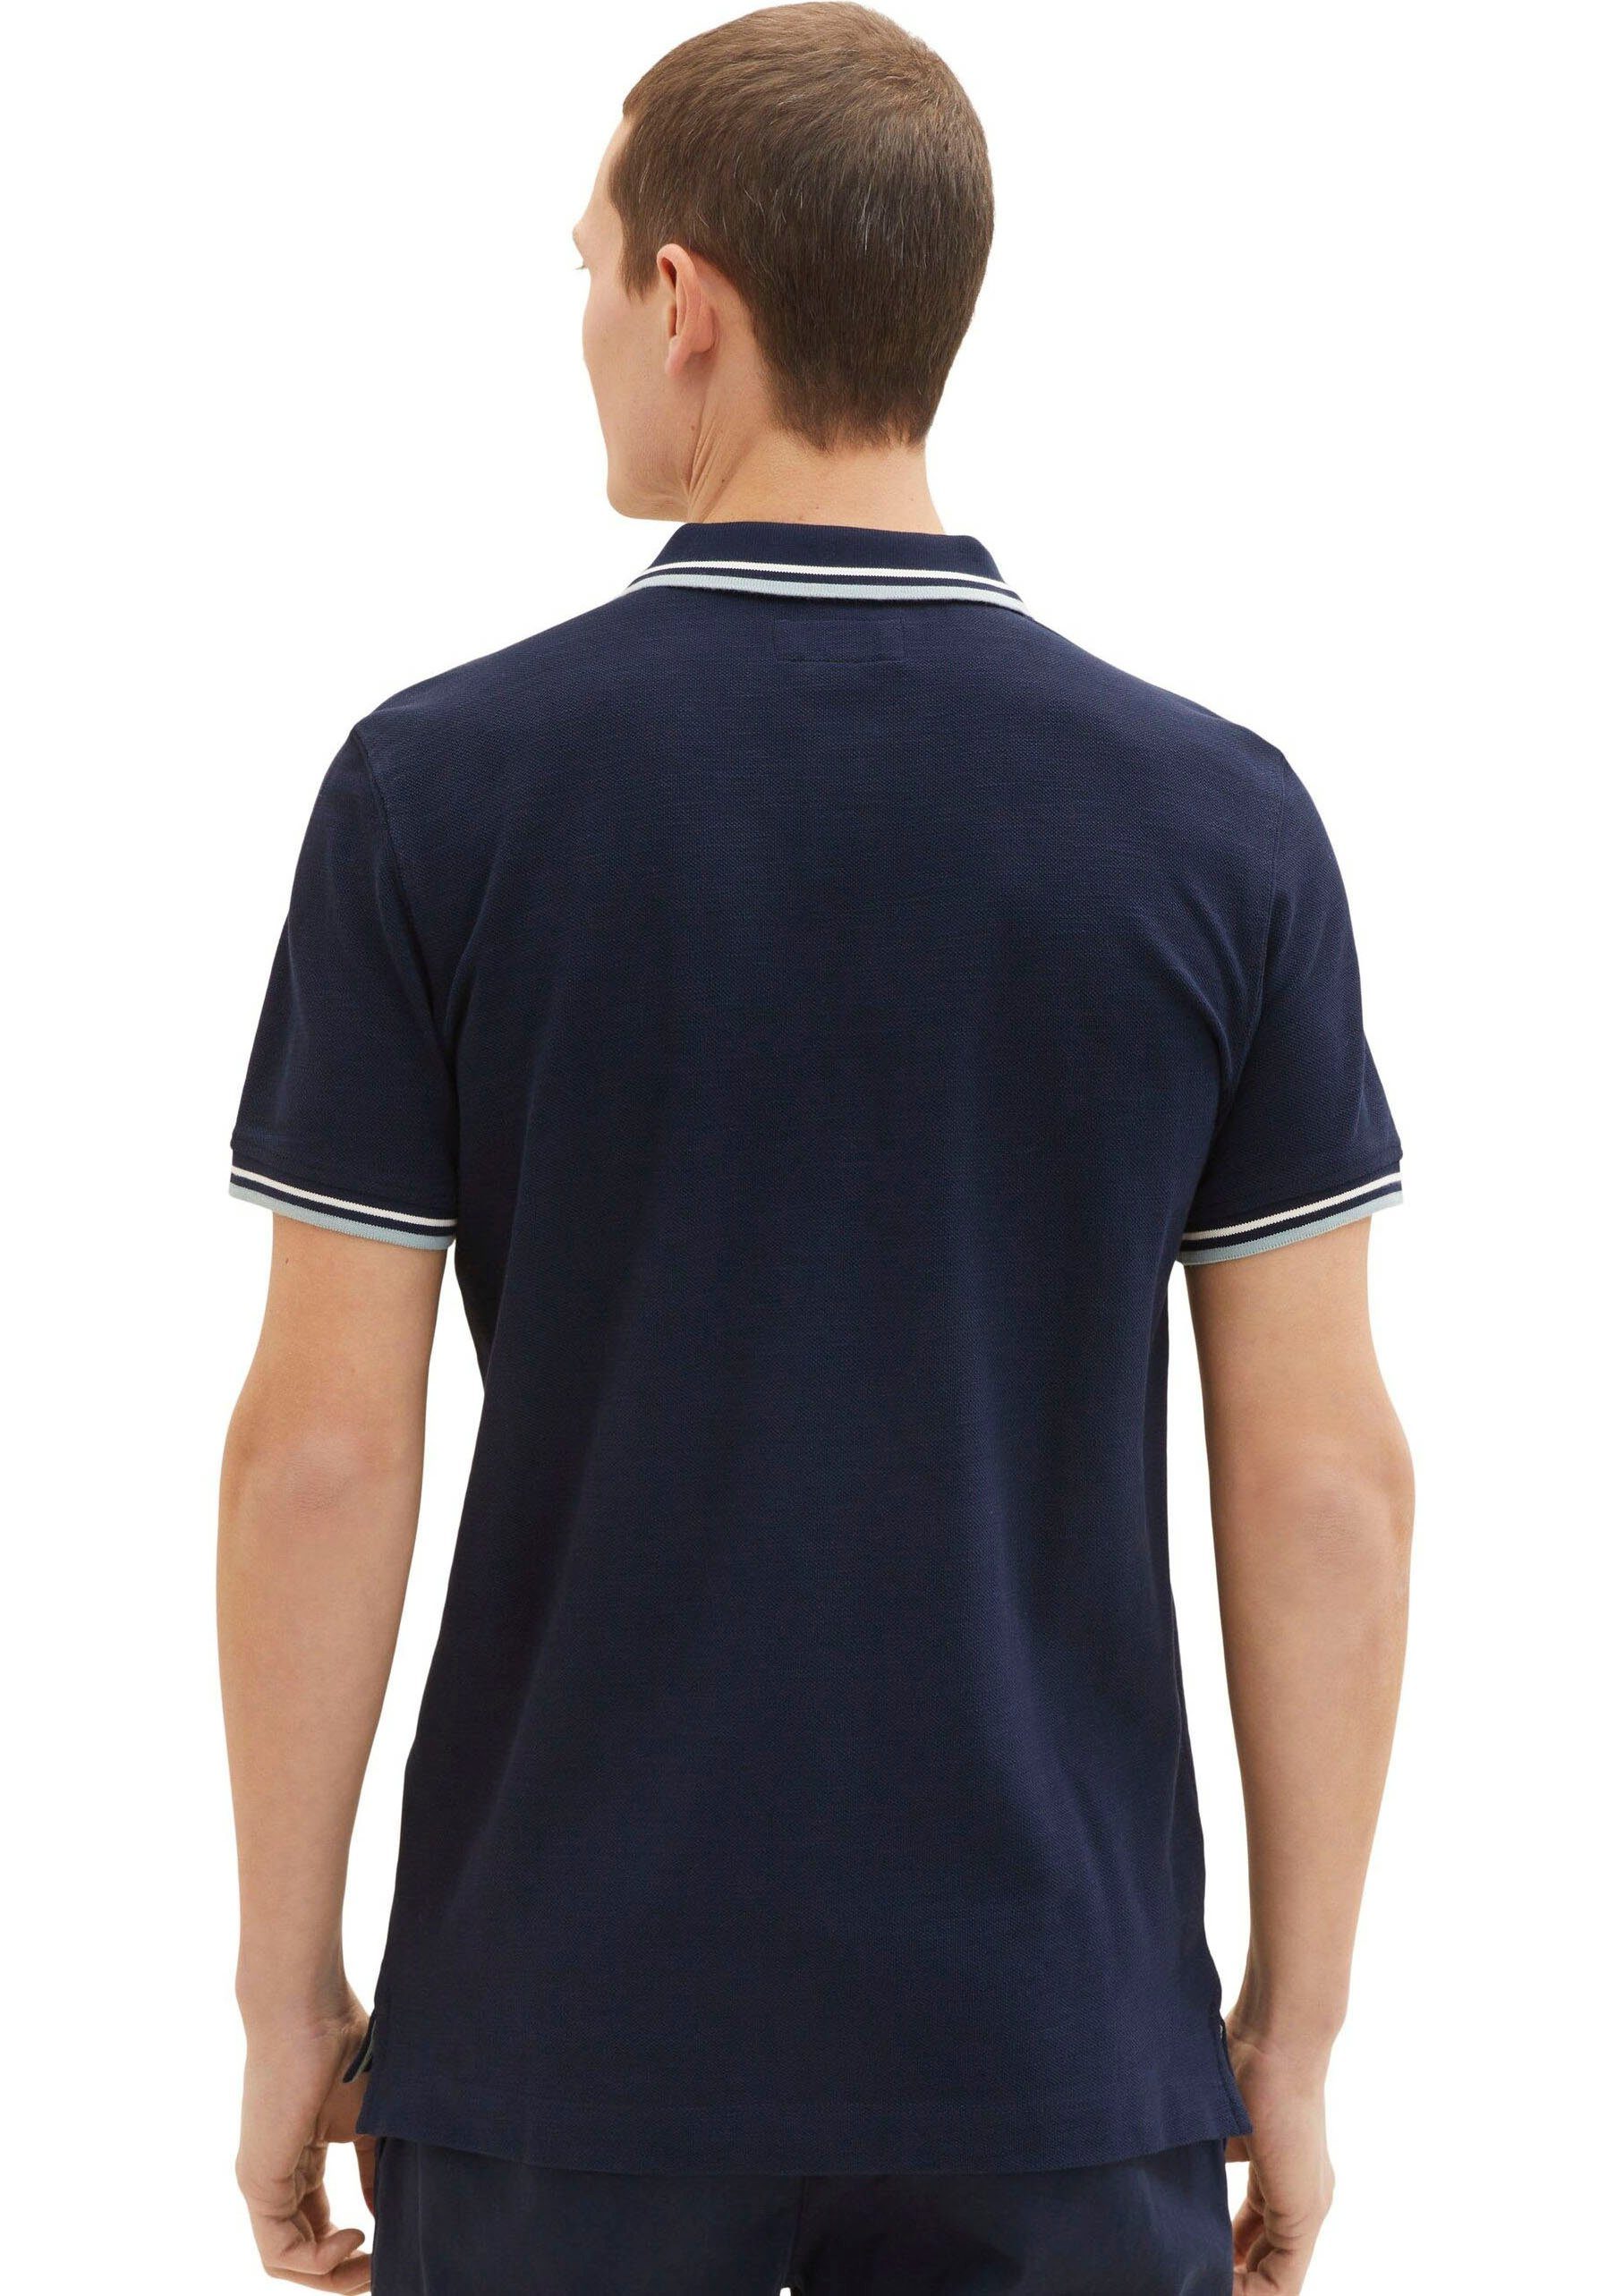 TOM Logoschriftzug TAILOR Poloshirt mit dunkelblau